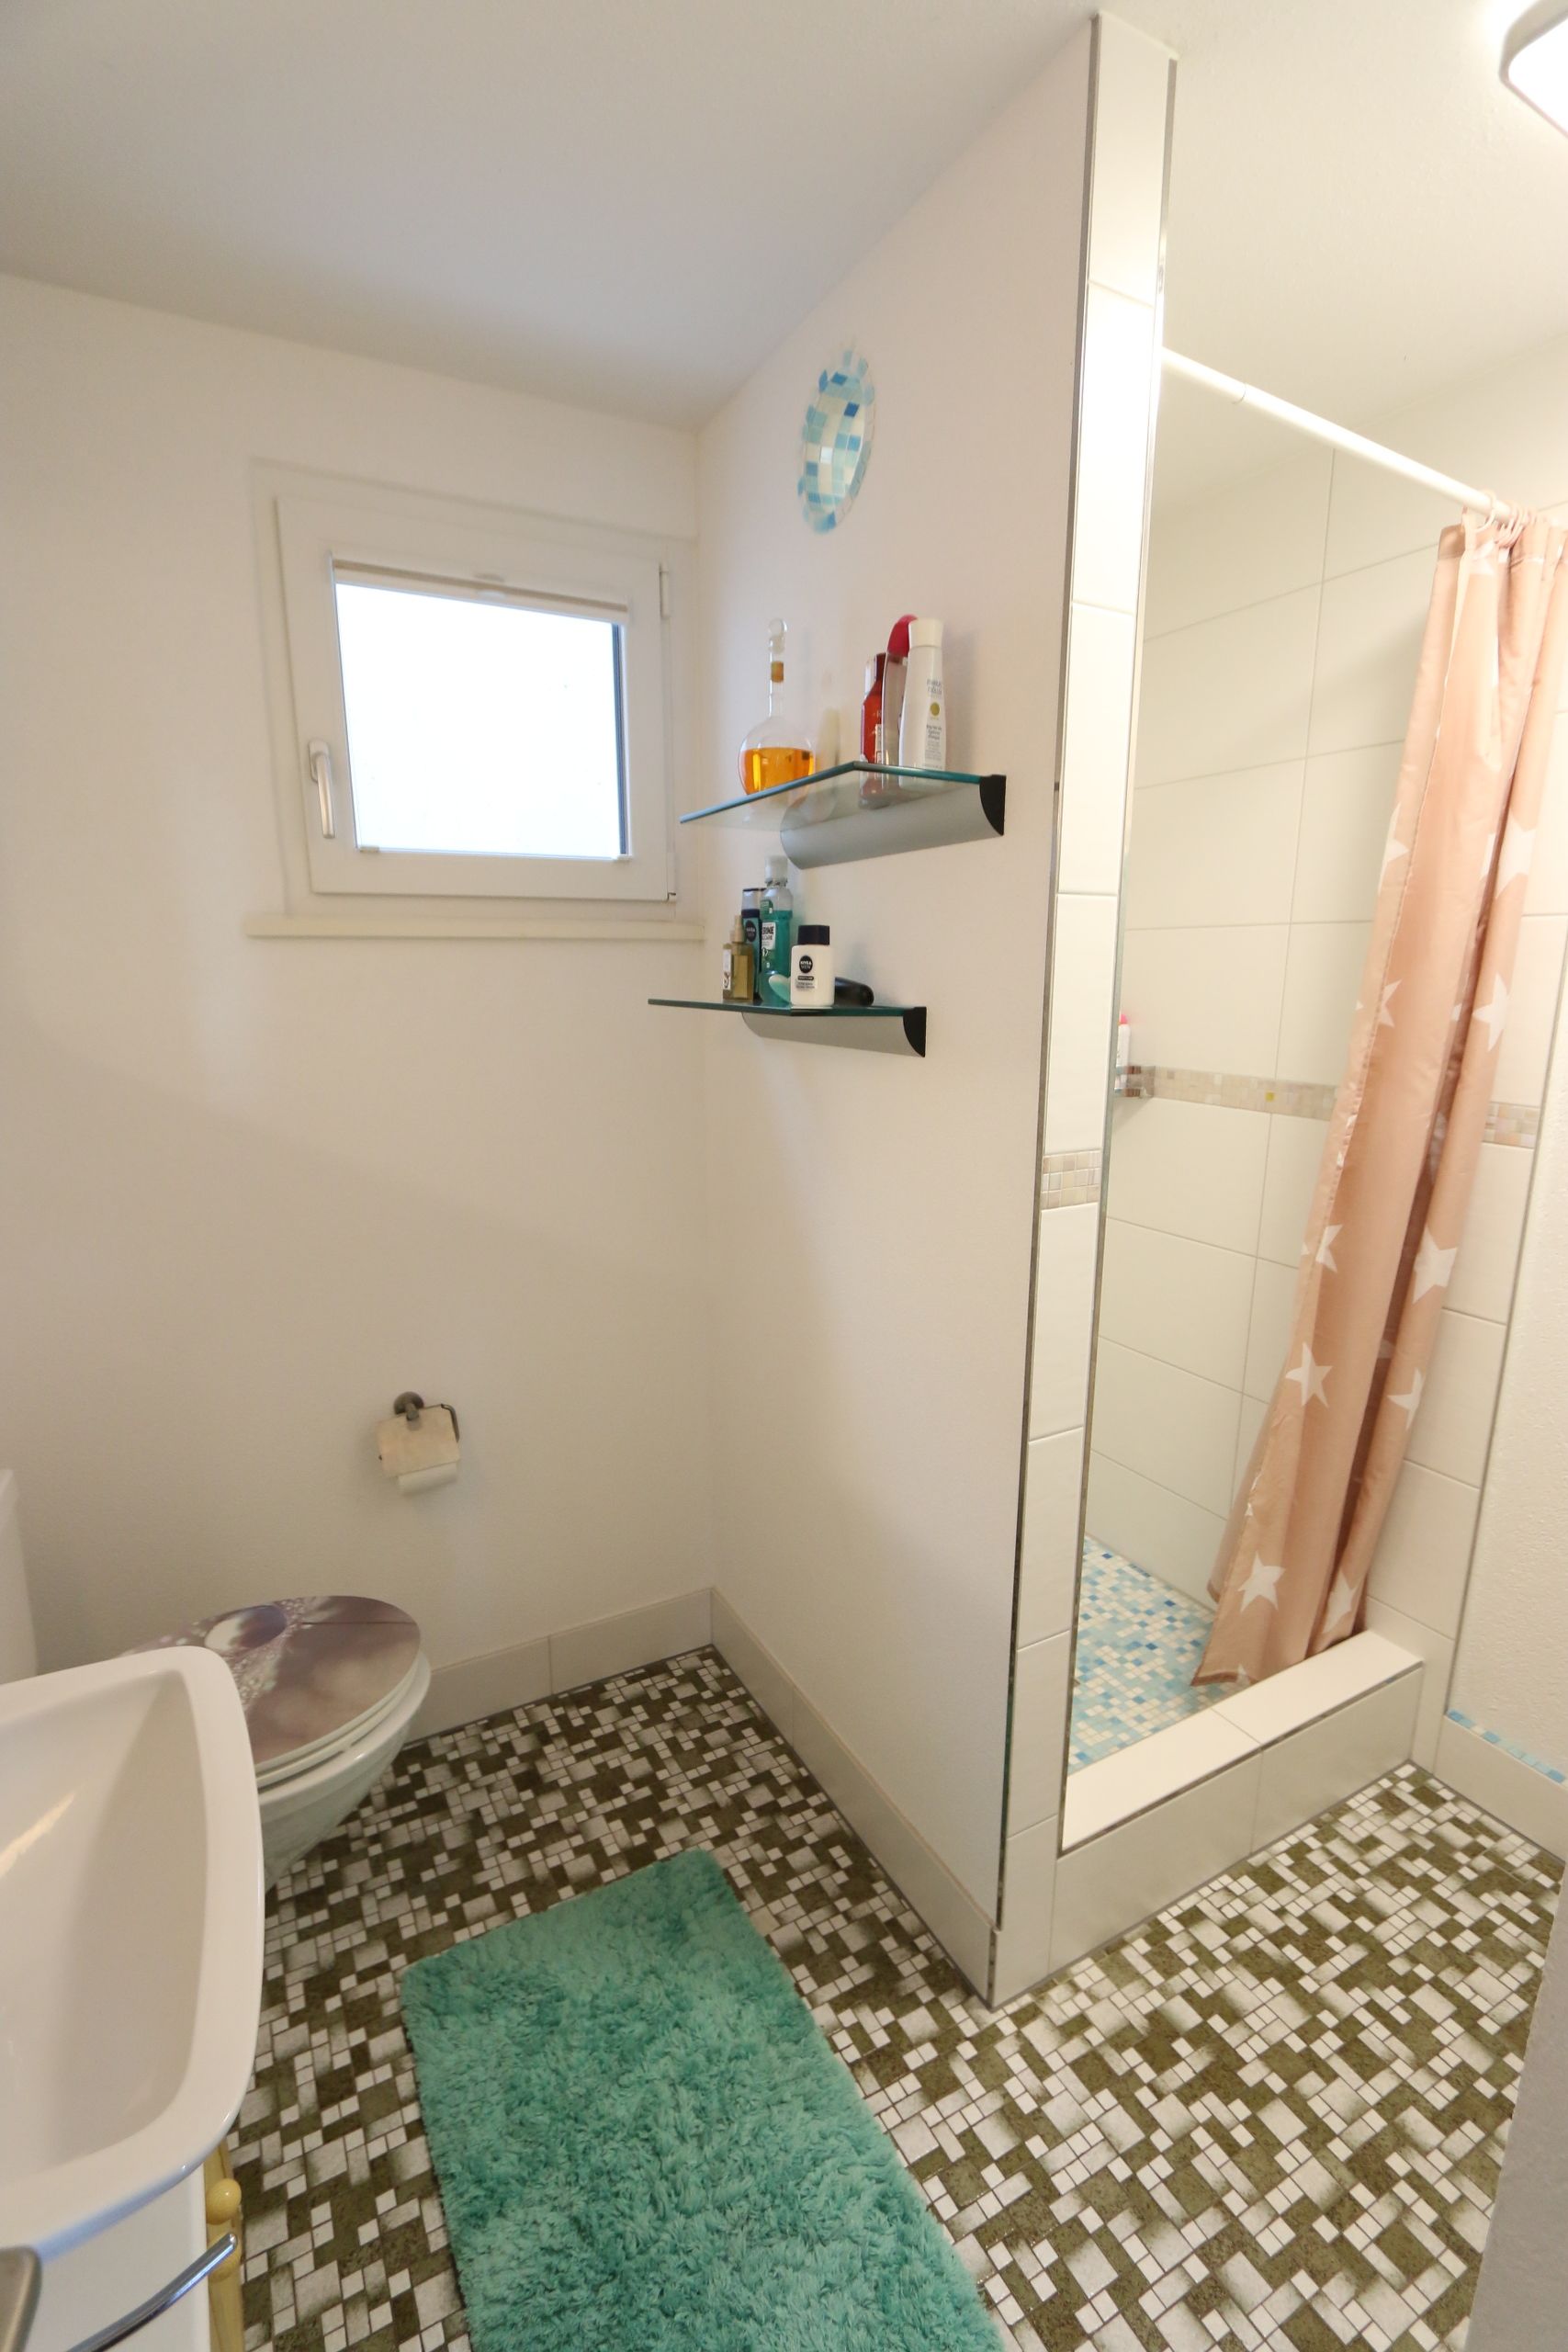 Bad im Erdgeschoss mit Dusche, WC und Lavabo